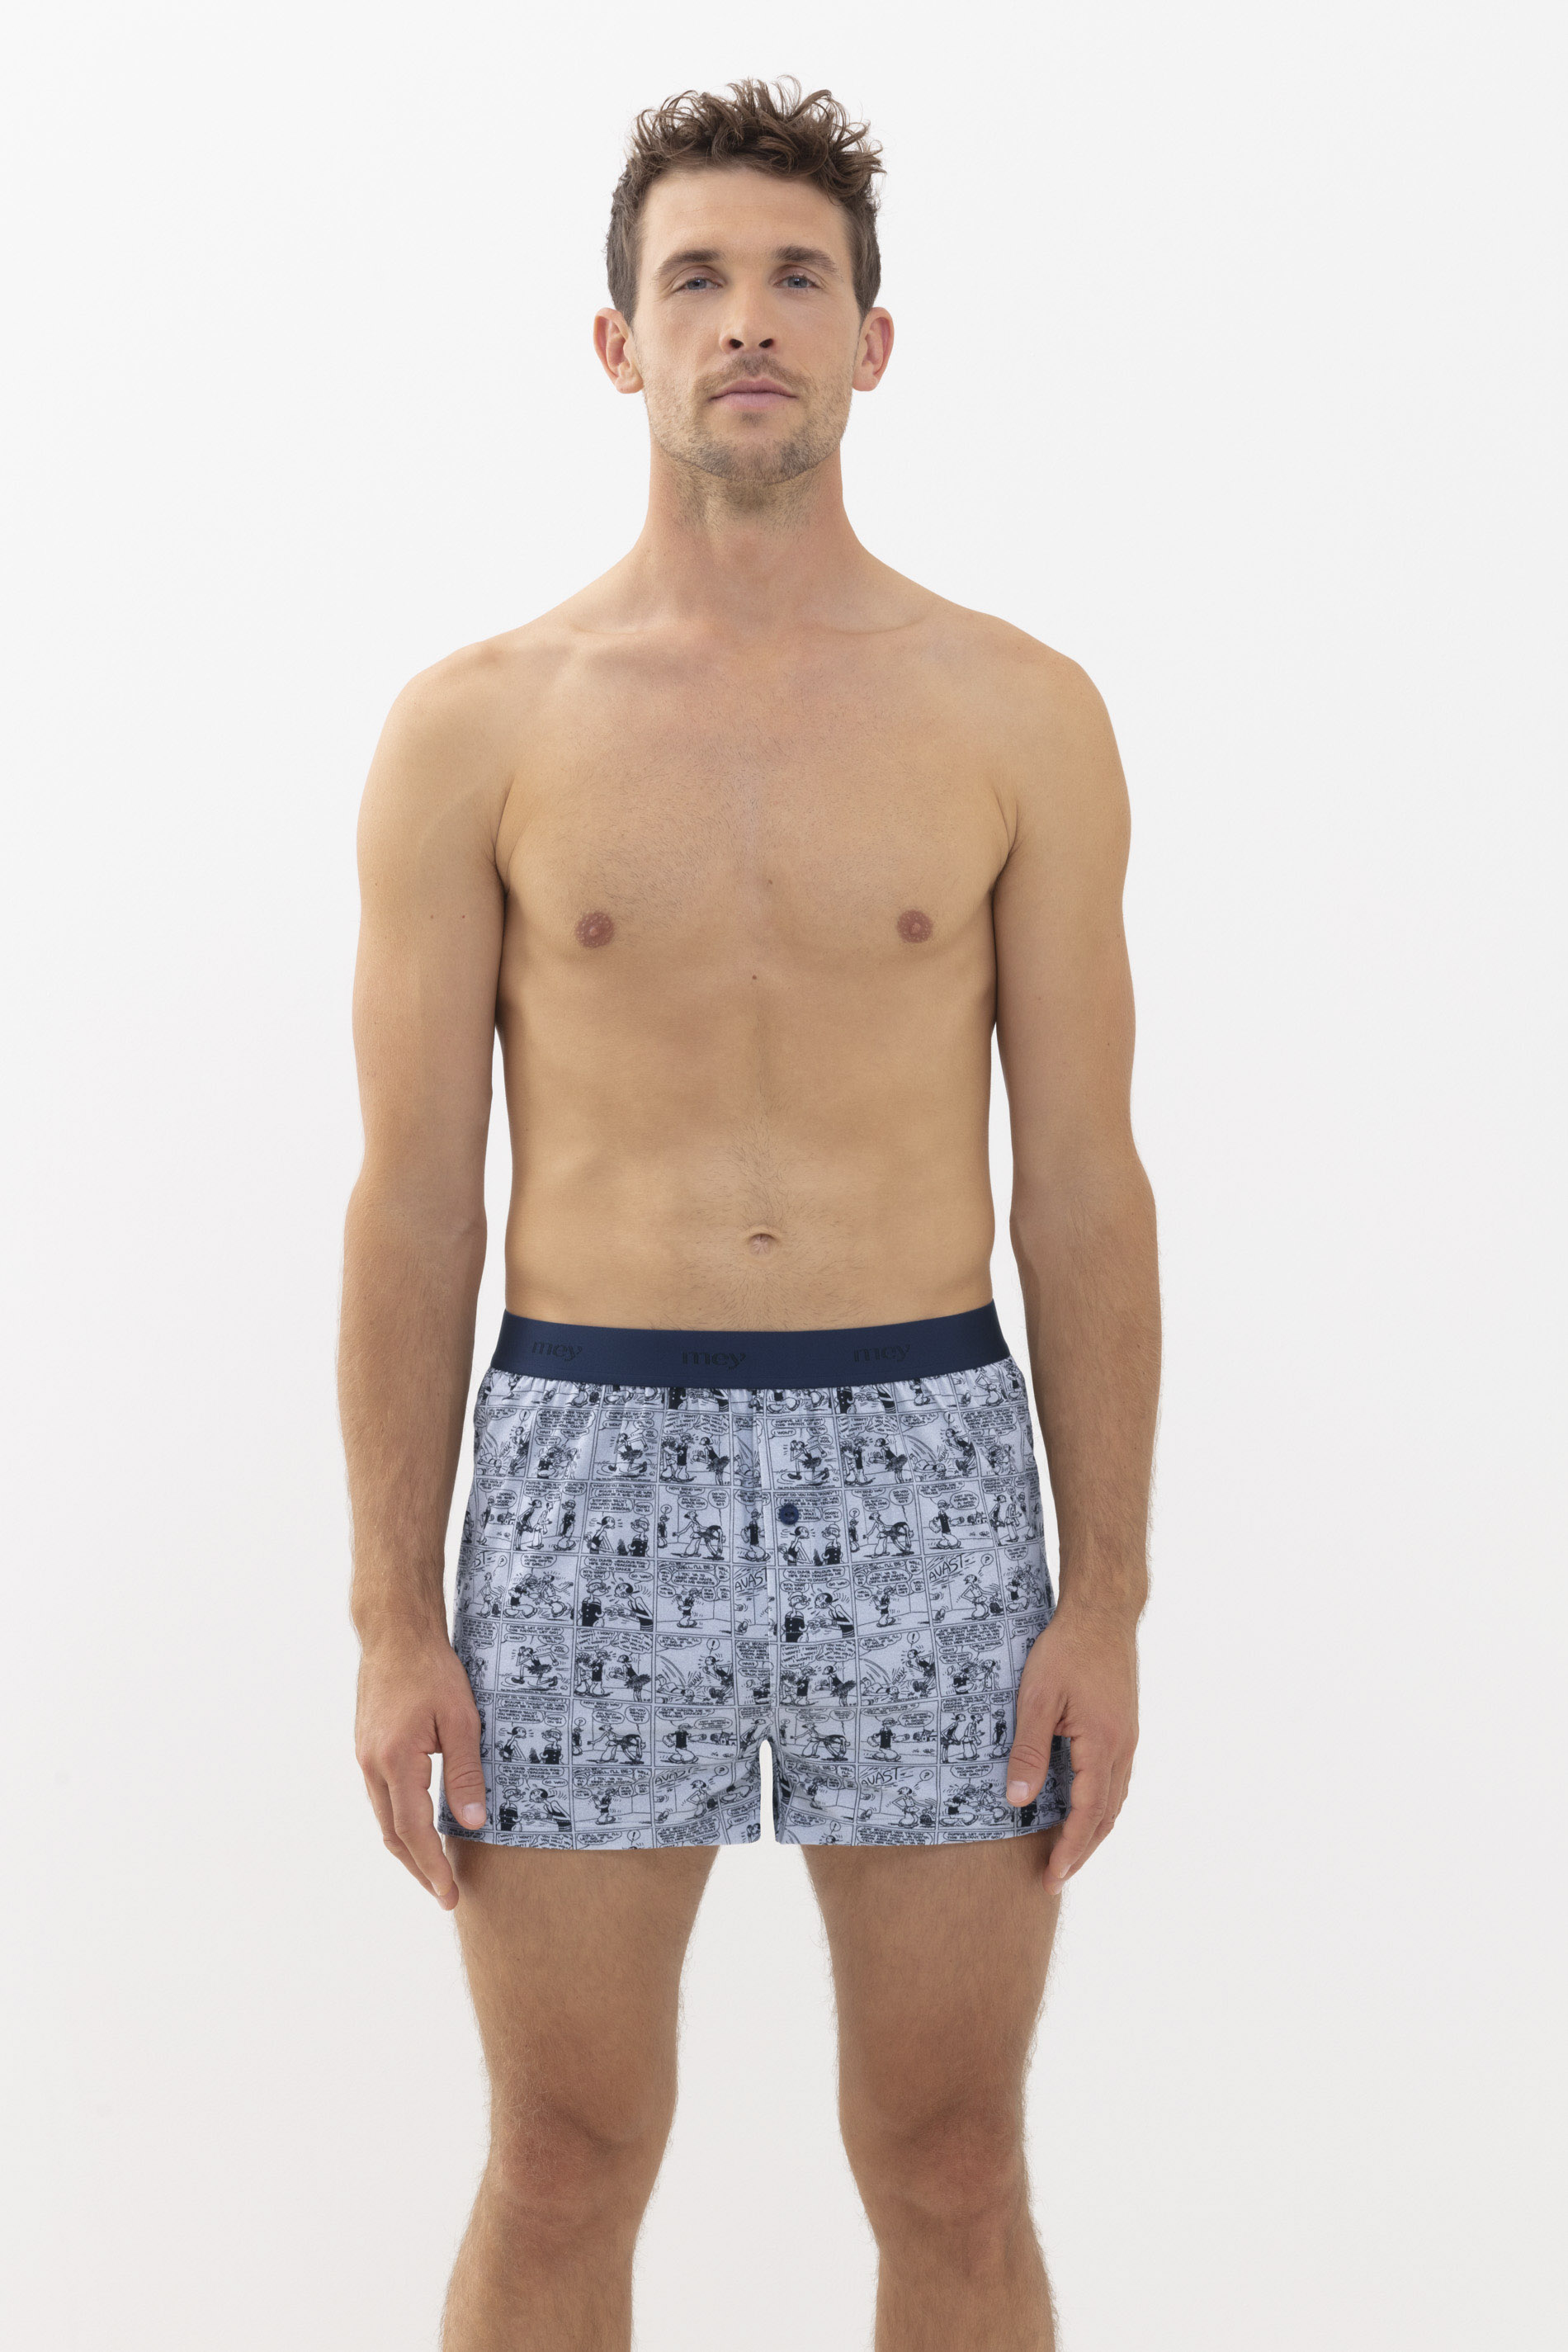 Boxer shorts Tin Grey Serie POPEYE©xMEY Front View | mey®